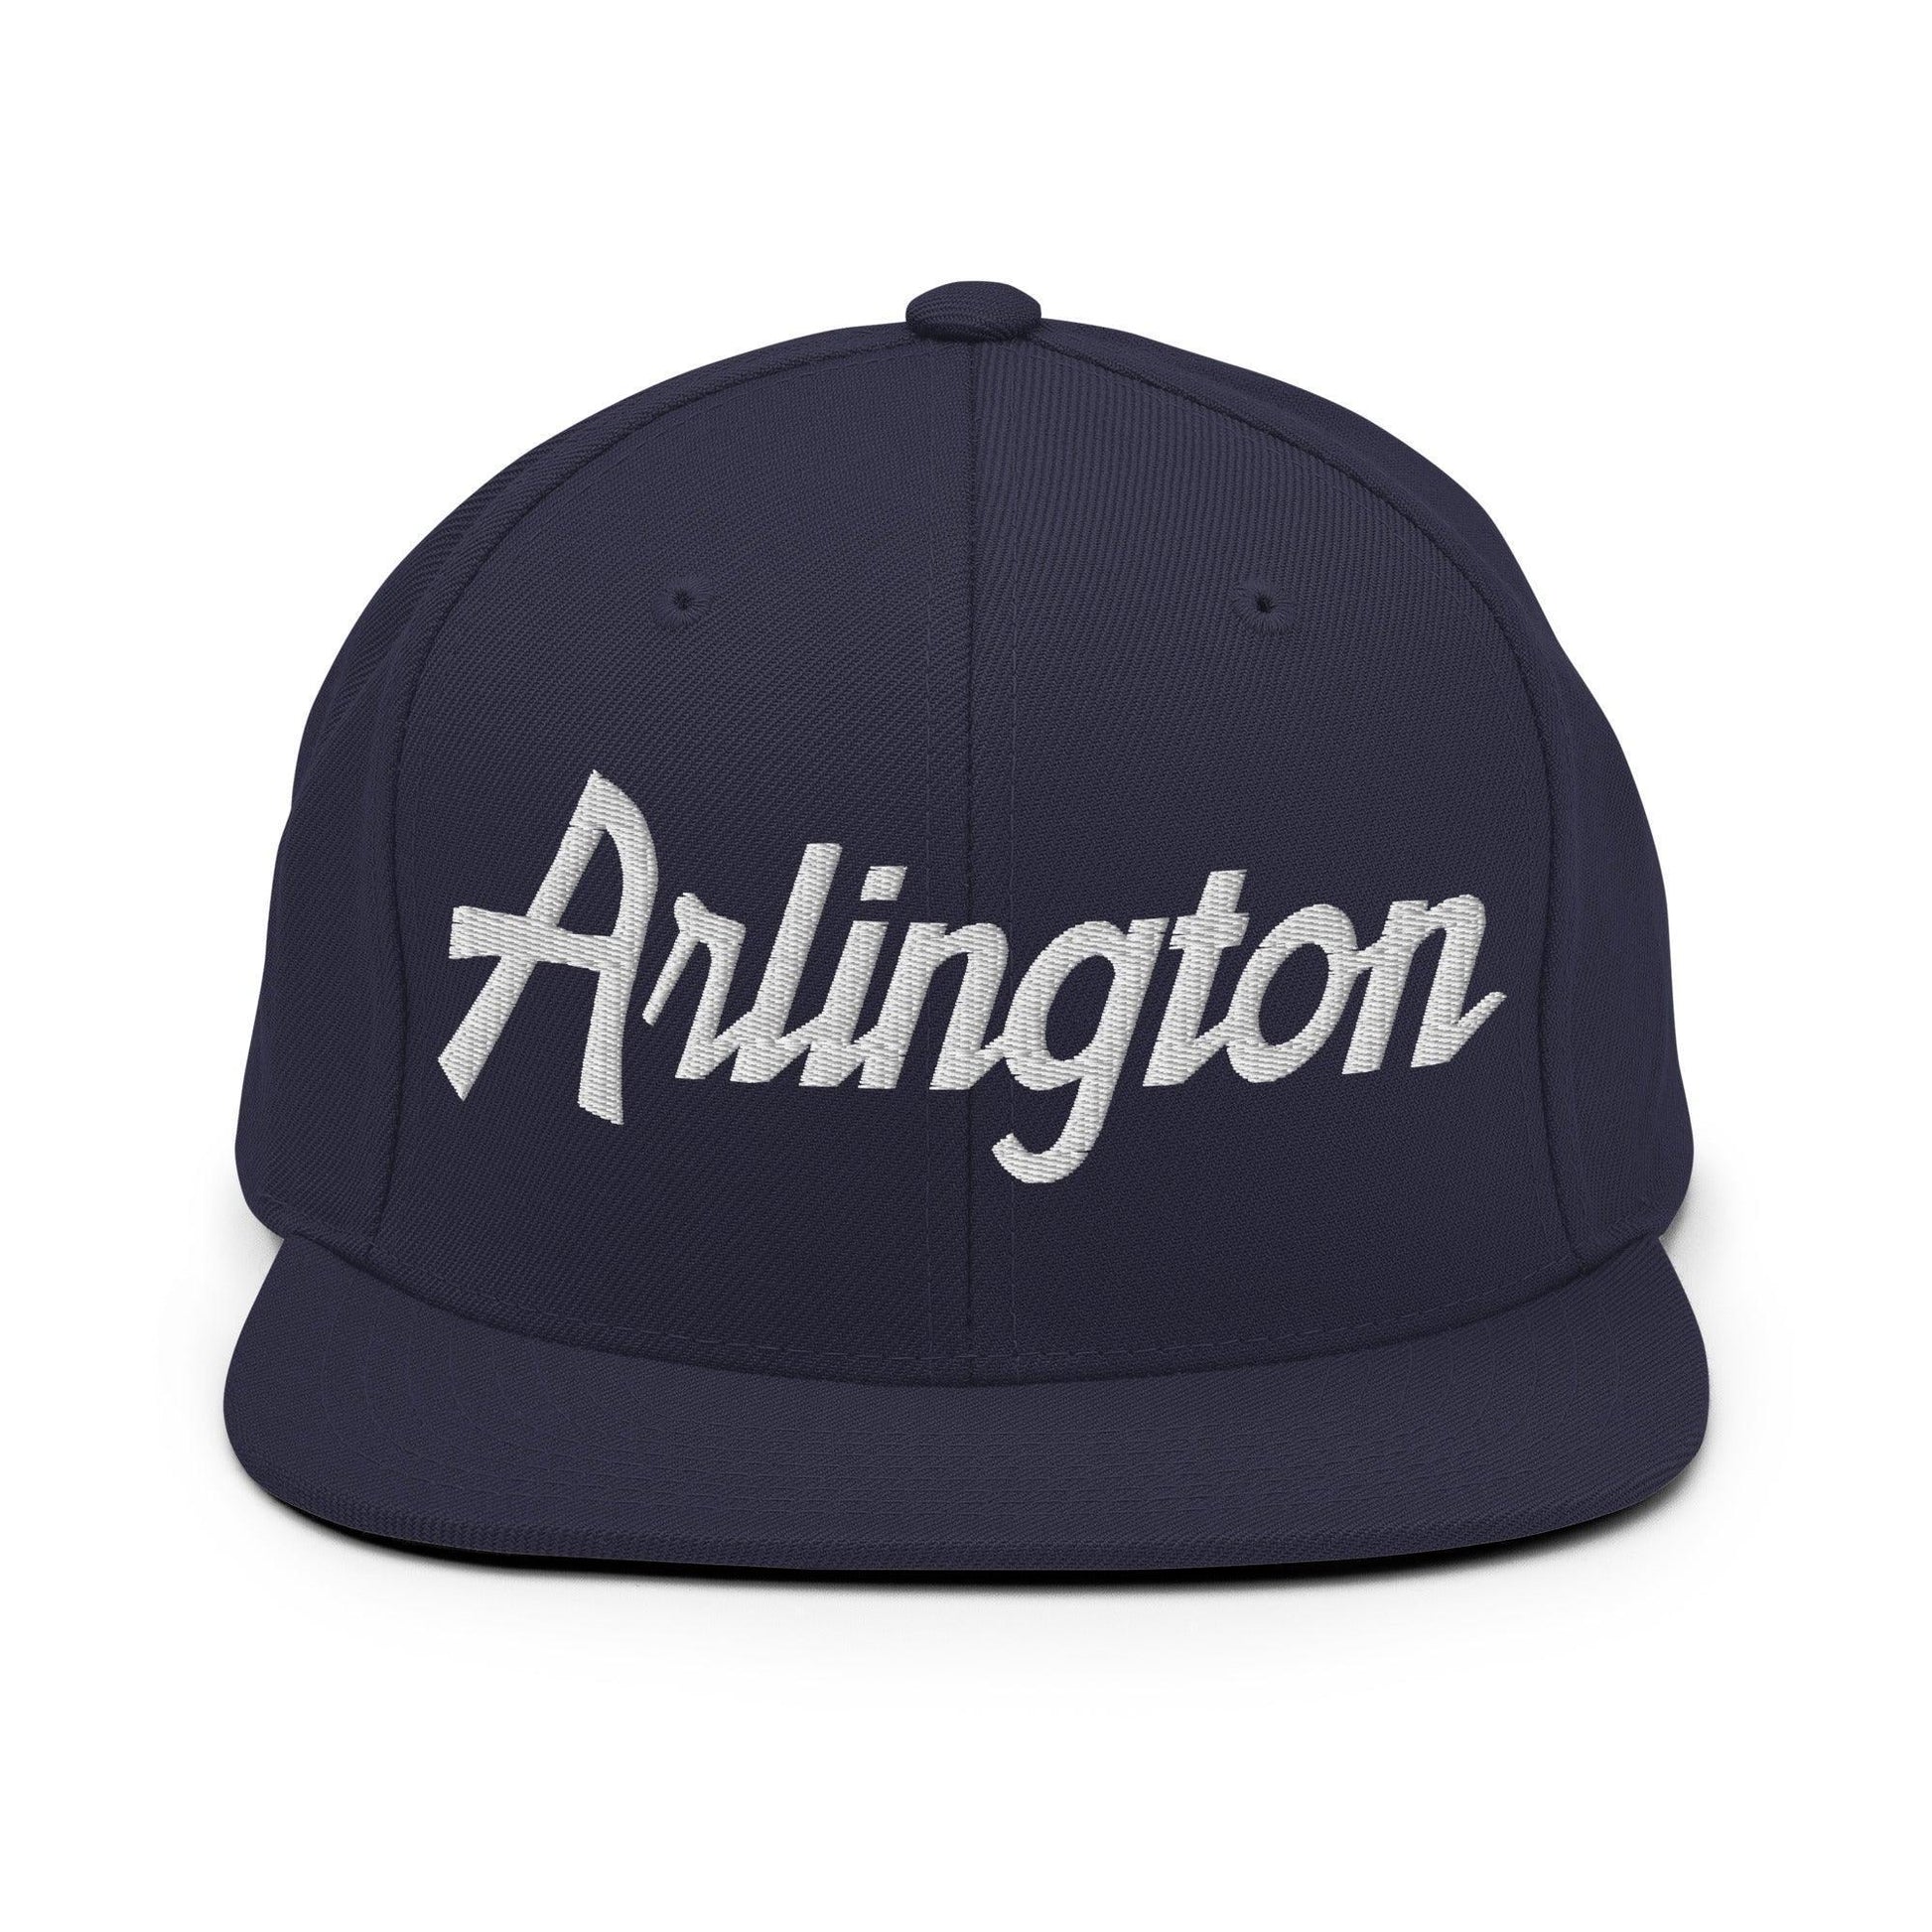 Arlington Script Snapback Hat Navy